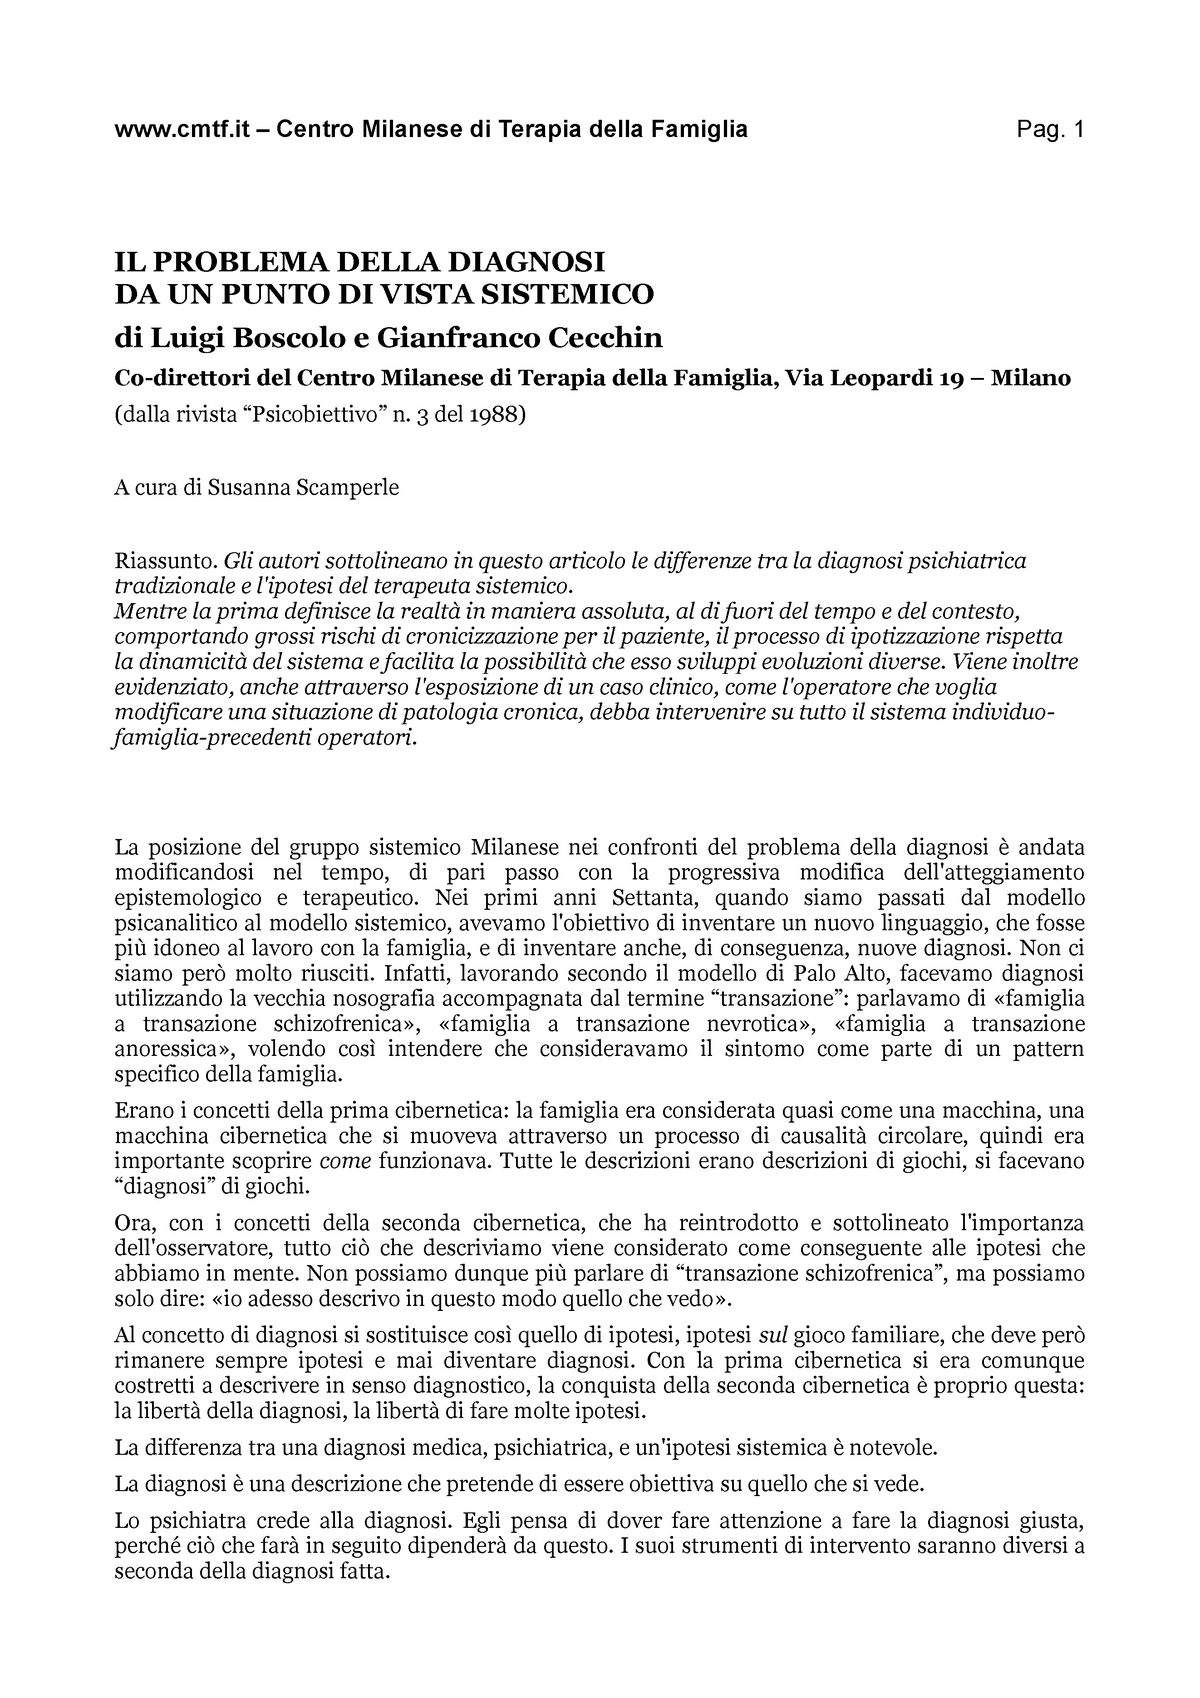 Luigi Boscolo Gianfranco Cecchin Il problema della diagnosi da un punto ...